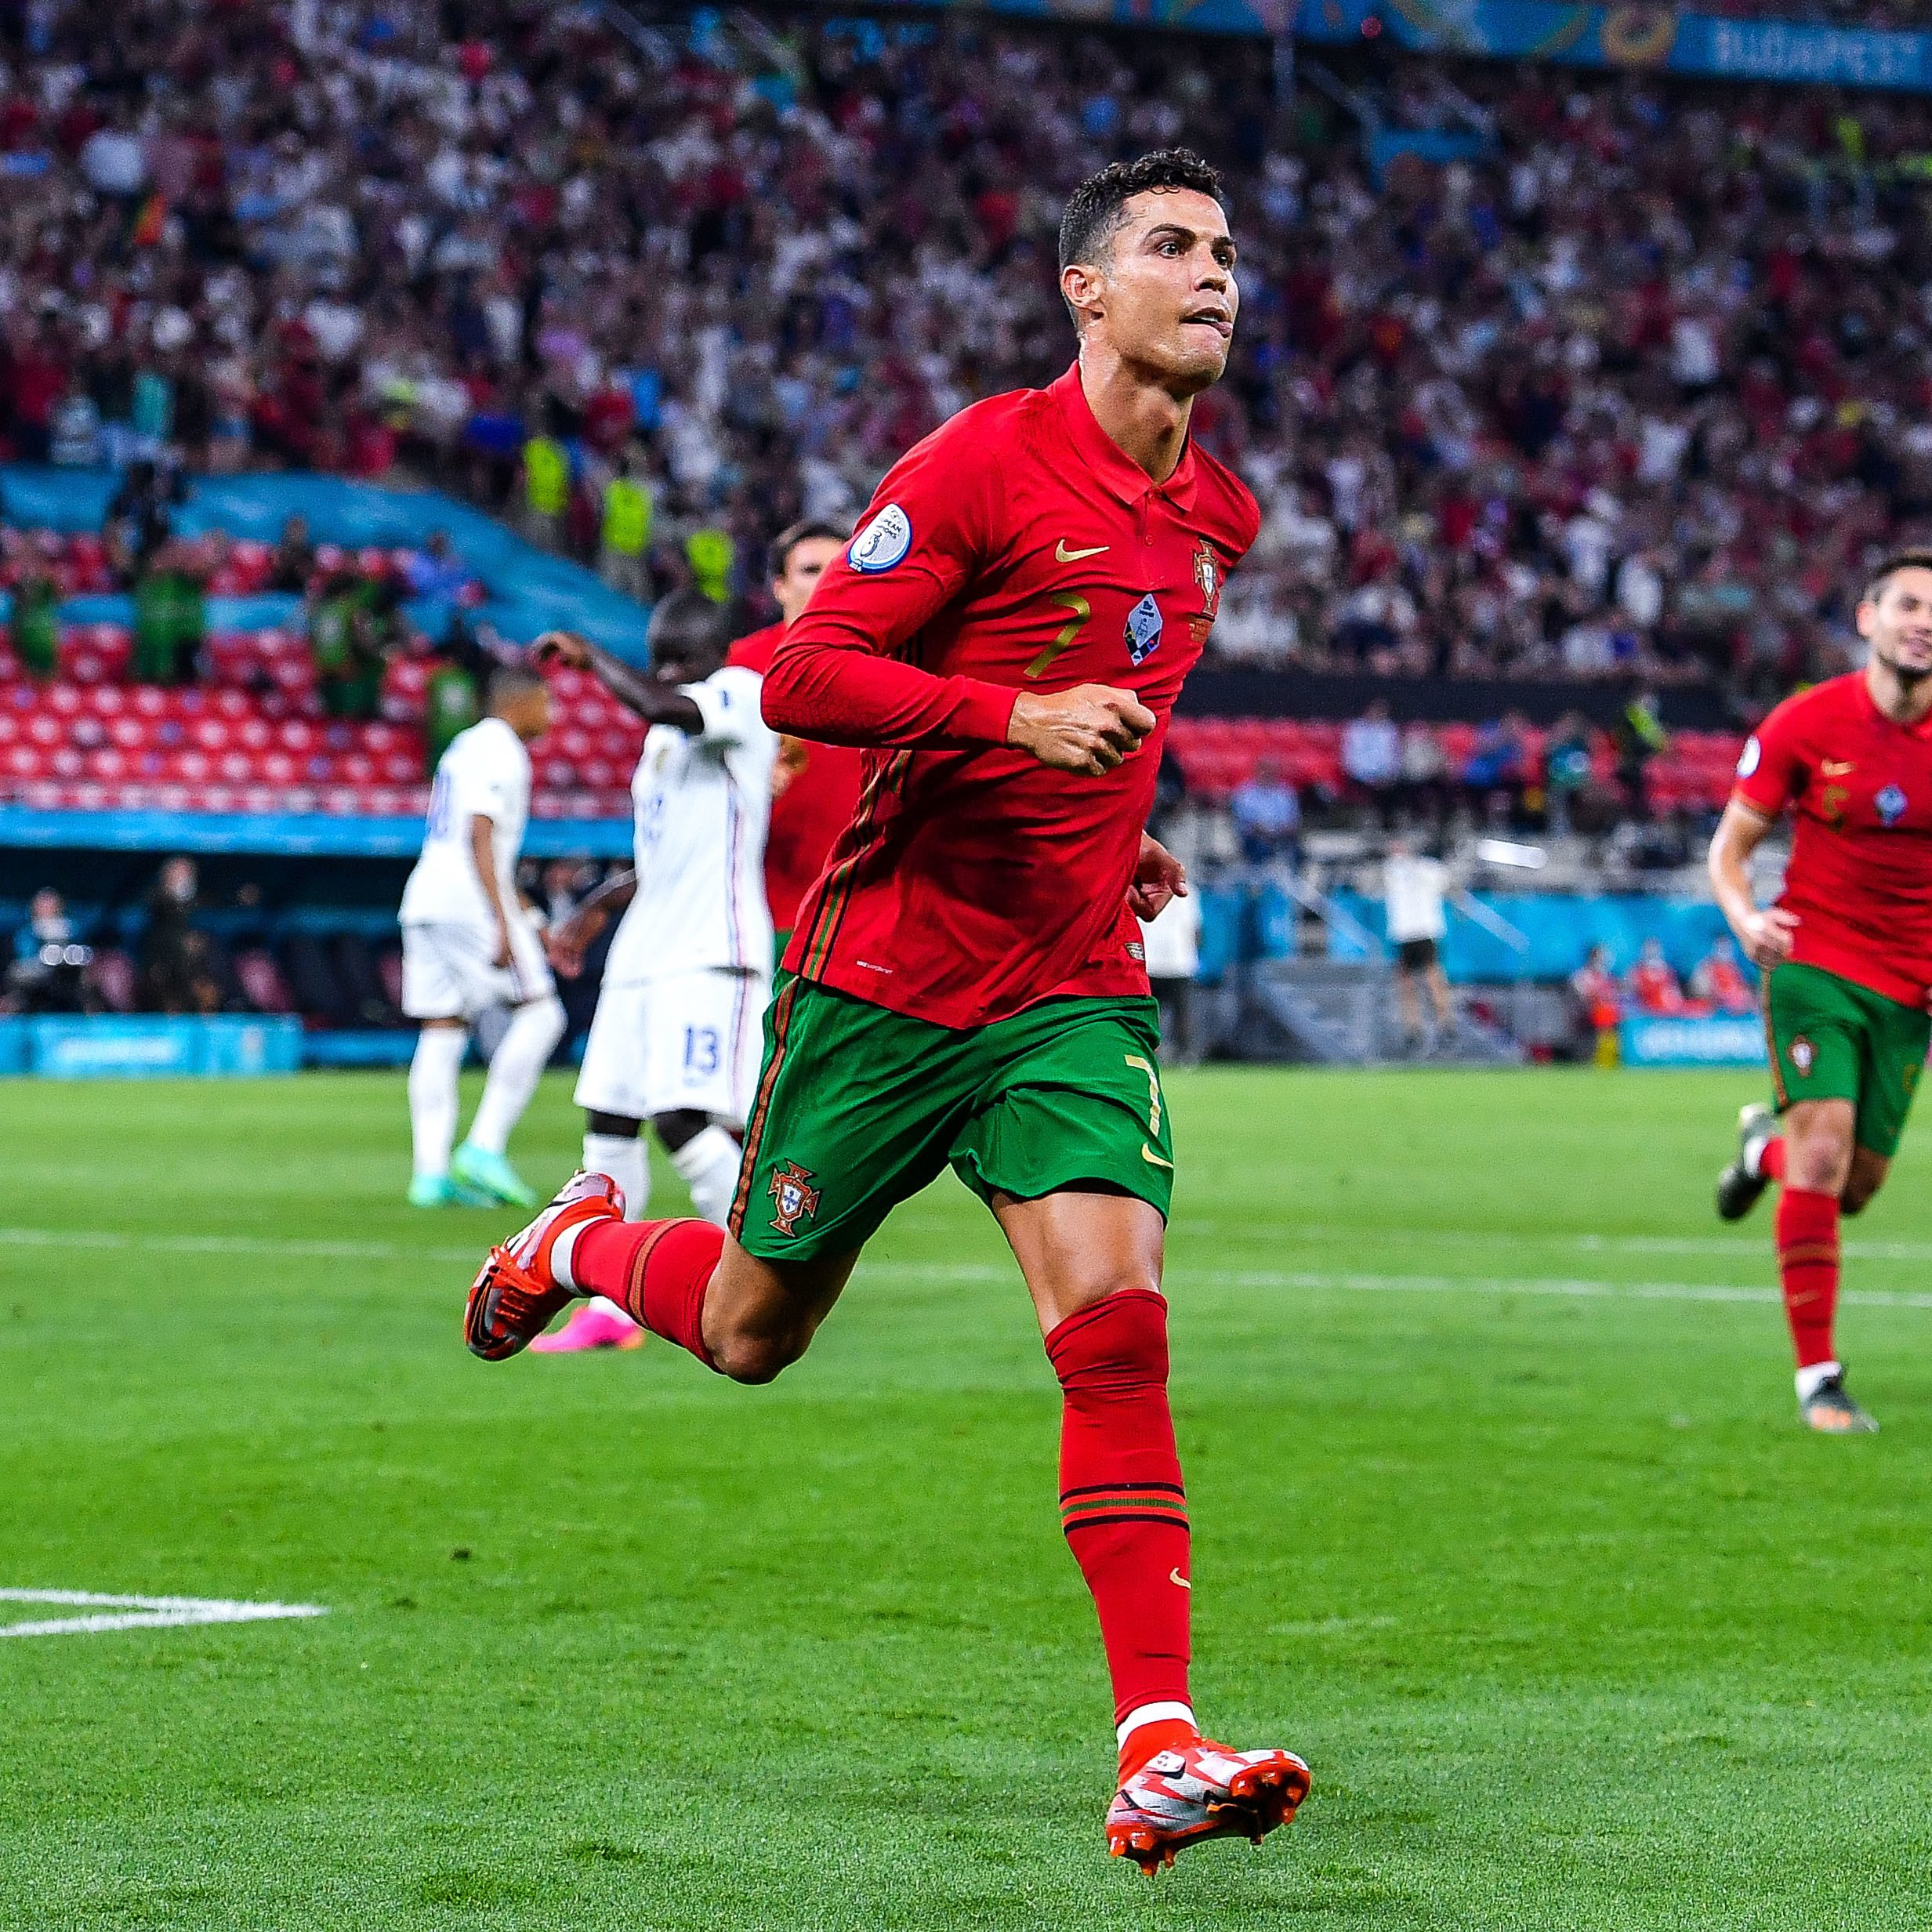 Ronaldo là một trong những cầu thủ ghi bàn xuất sắc nhất trong lịch sử tuyển Bồ Đào Nha. Hãy xem hình ảnh này để thấy rõ những kỷ lục ghi bàn mà anh ấy đã lập được. Bạn sẽ cảm thấy đầy cảm hứng và khát khao trở thành một cầu thủ bóng đá giỏi như Ronaldo.